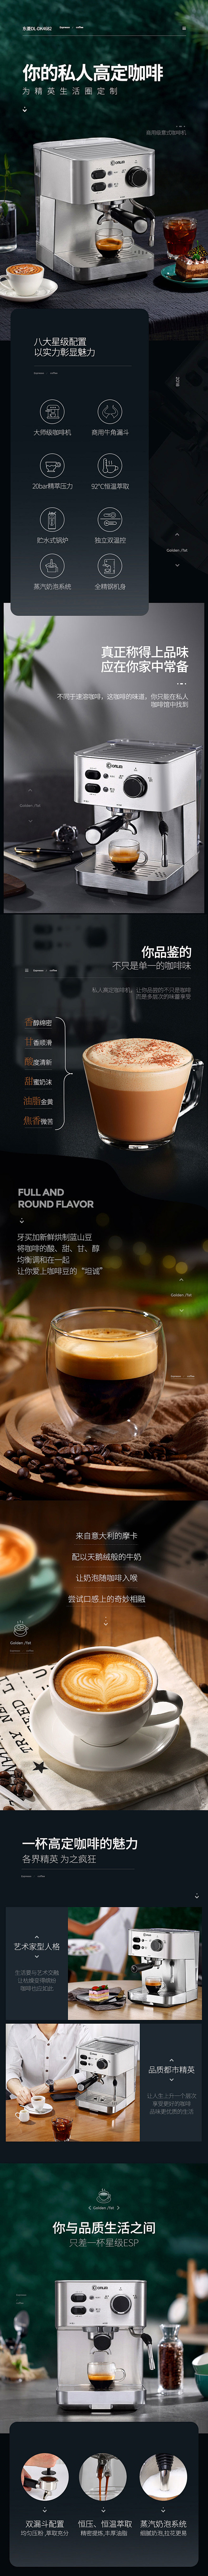 Donlim/东菱 意式咖啡机 产品详情...